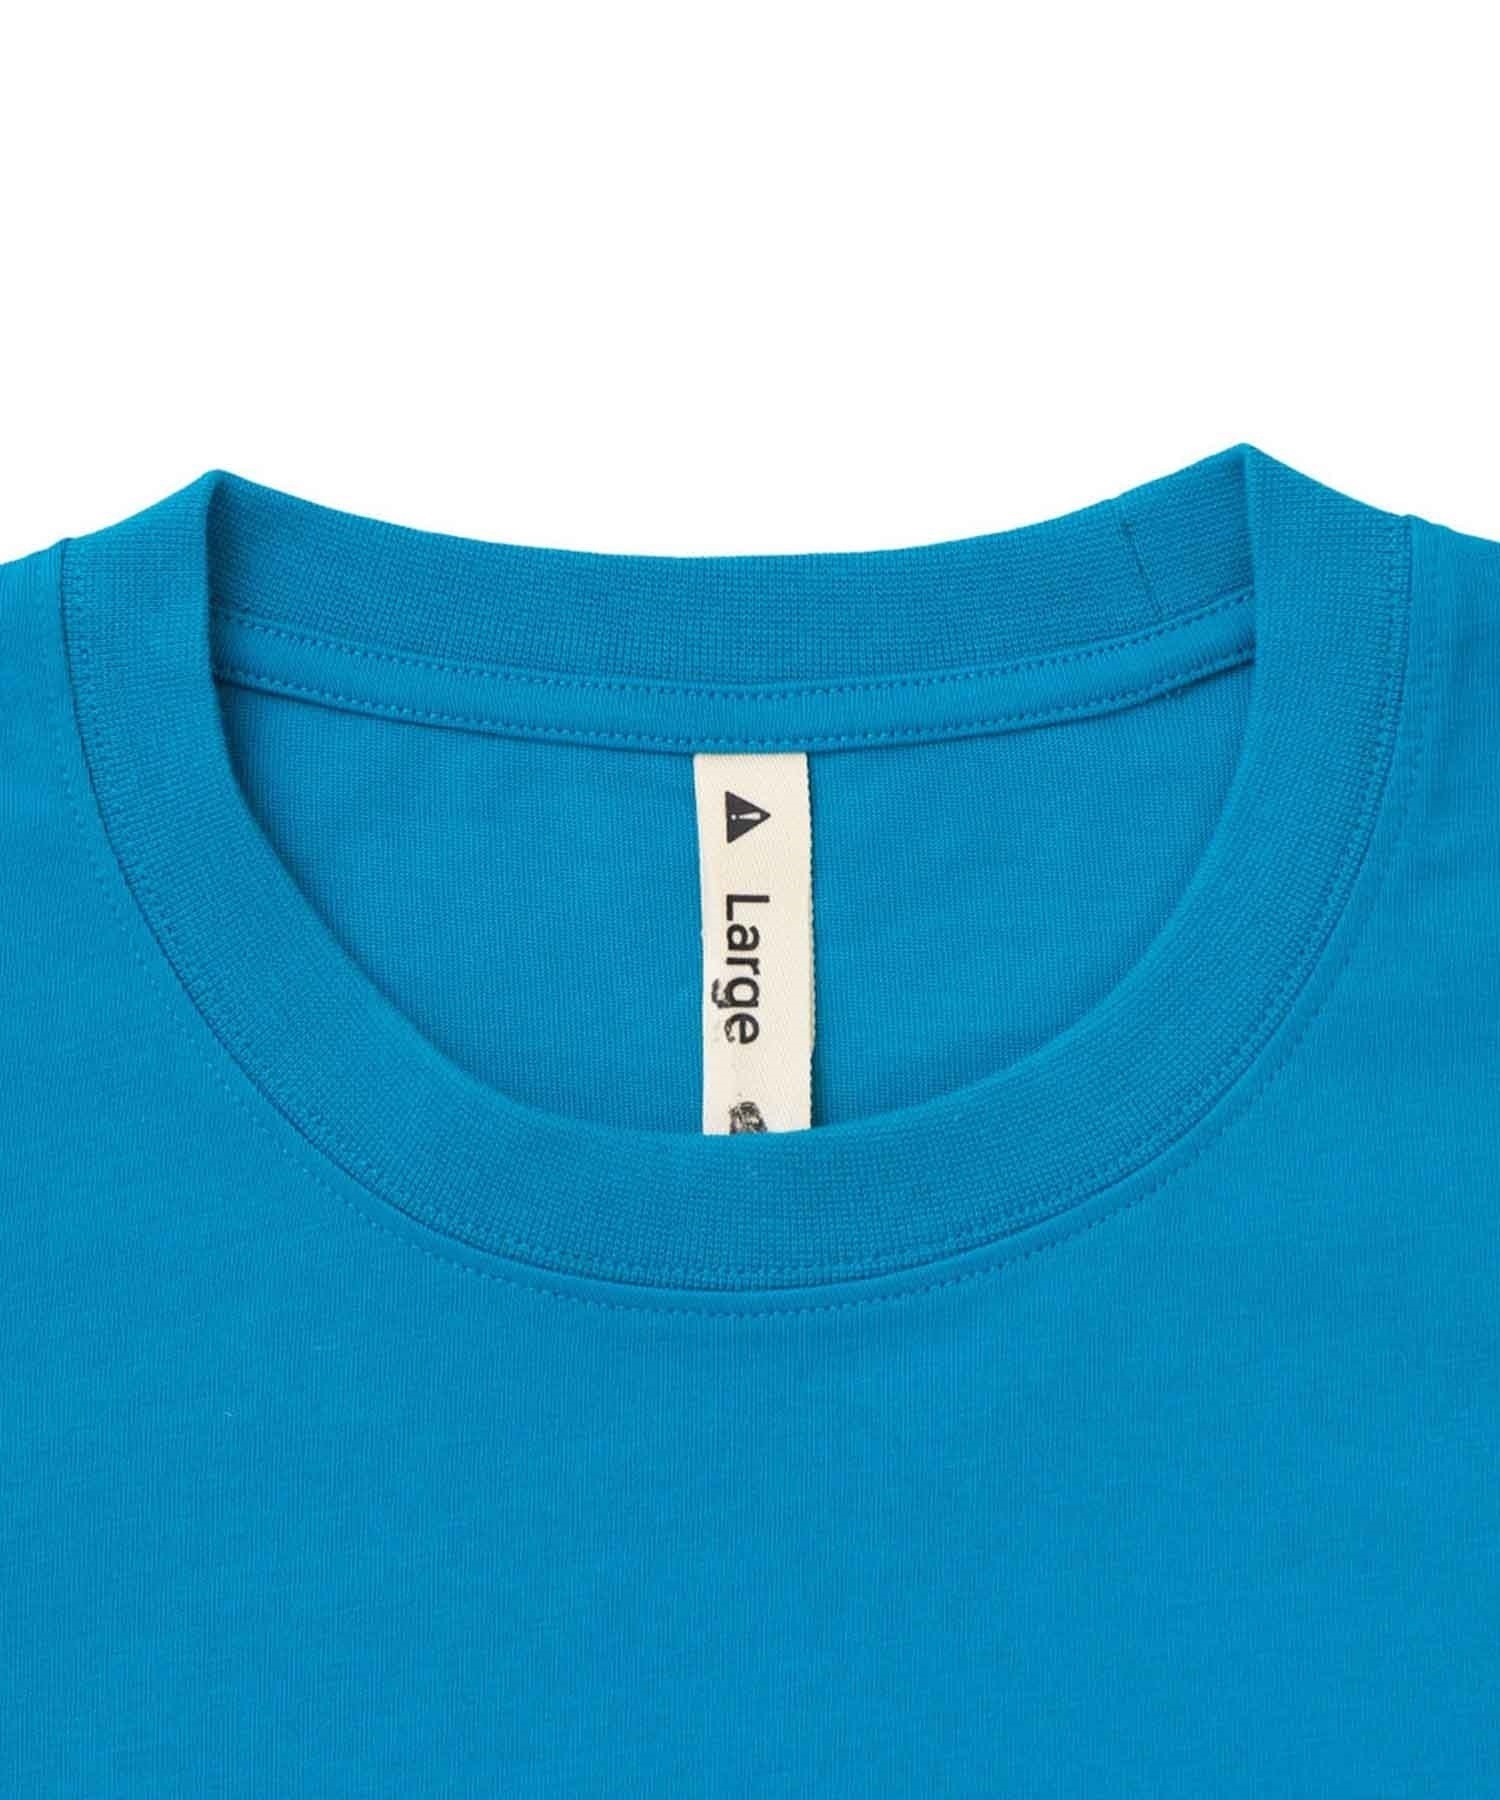 【マトメガイ対象】KEEN/キーン OC/RP KEEN LOGO TEE DAY メンズ Tシャツ 半袖 1028271(FJBL-S)